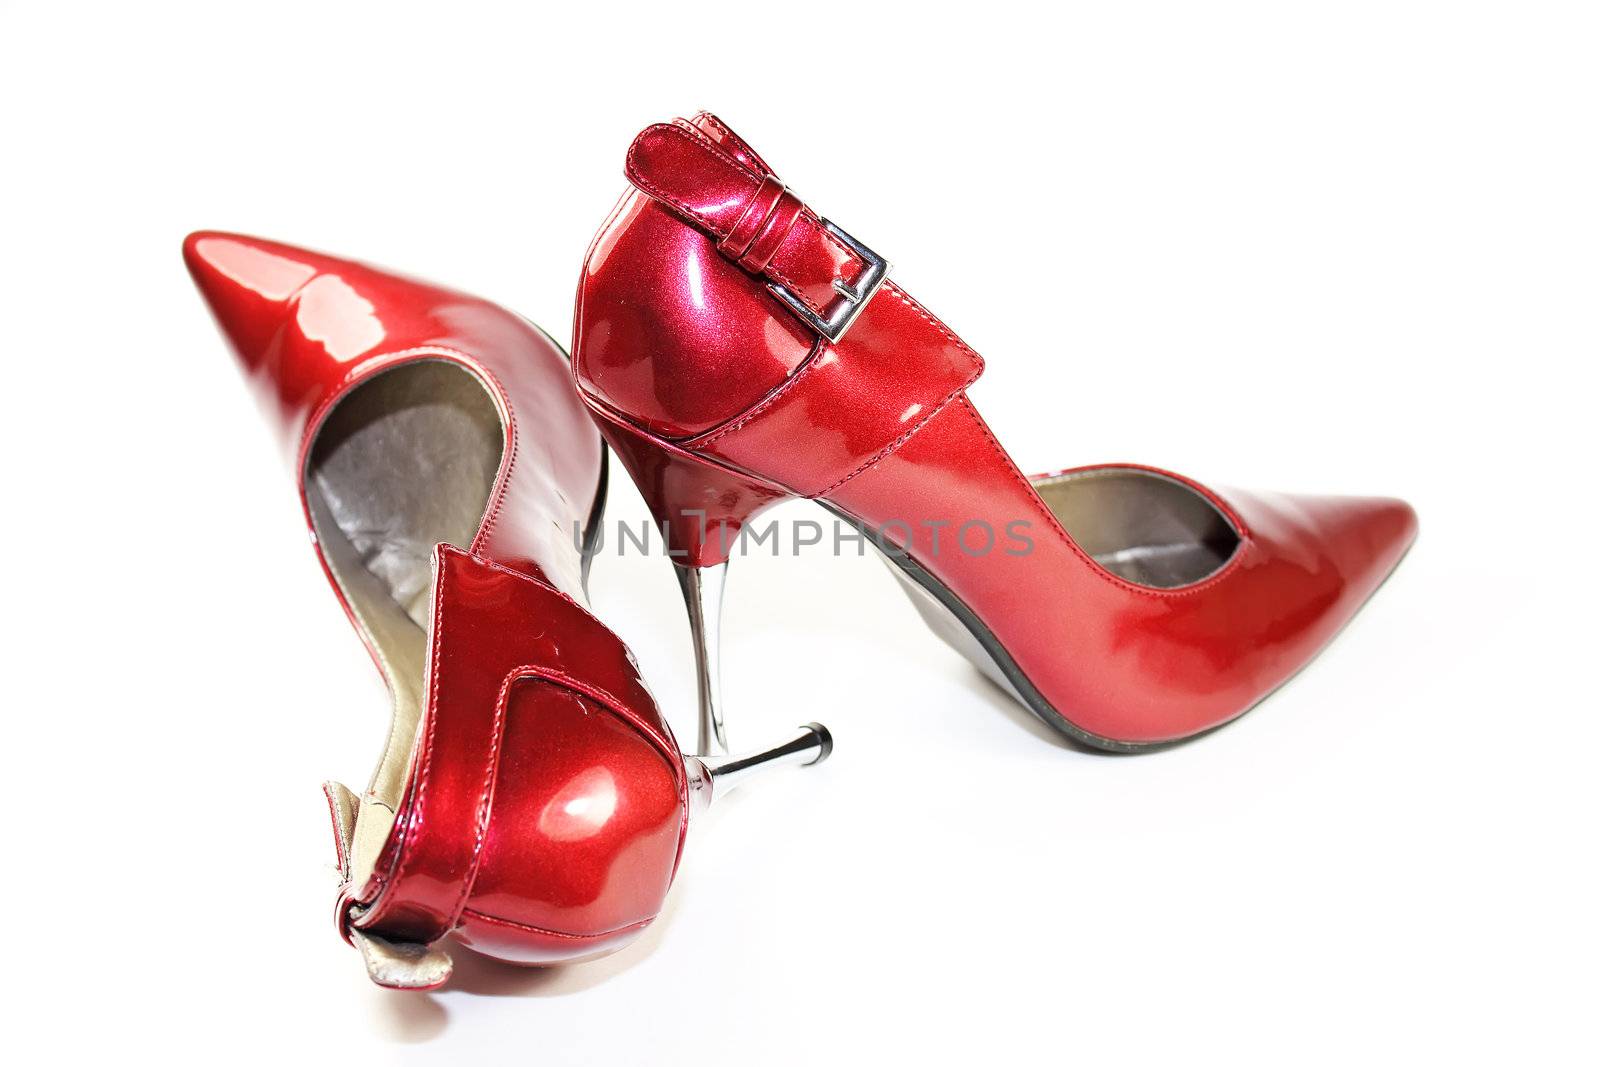 Elegant red high heels by piotrek73